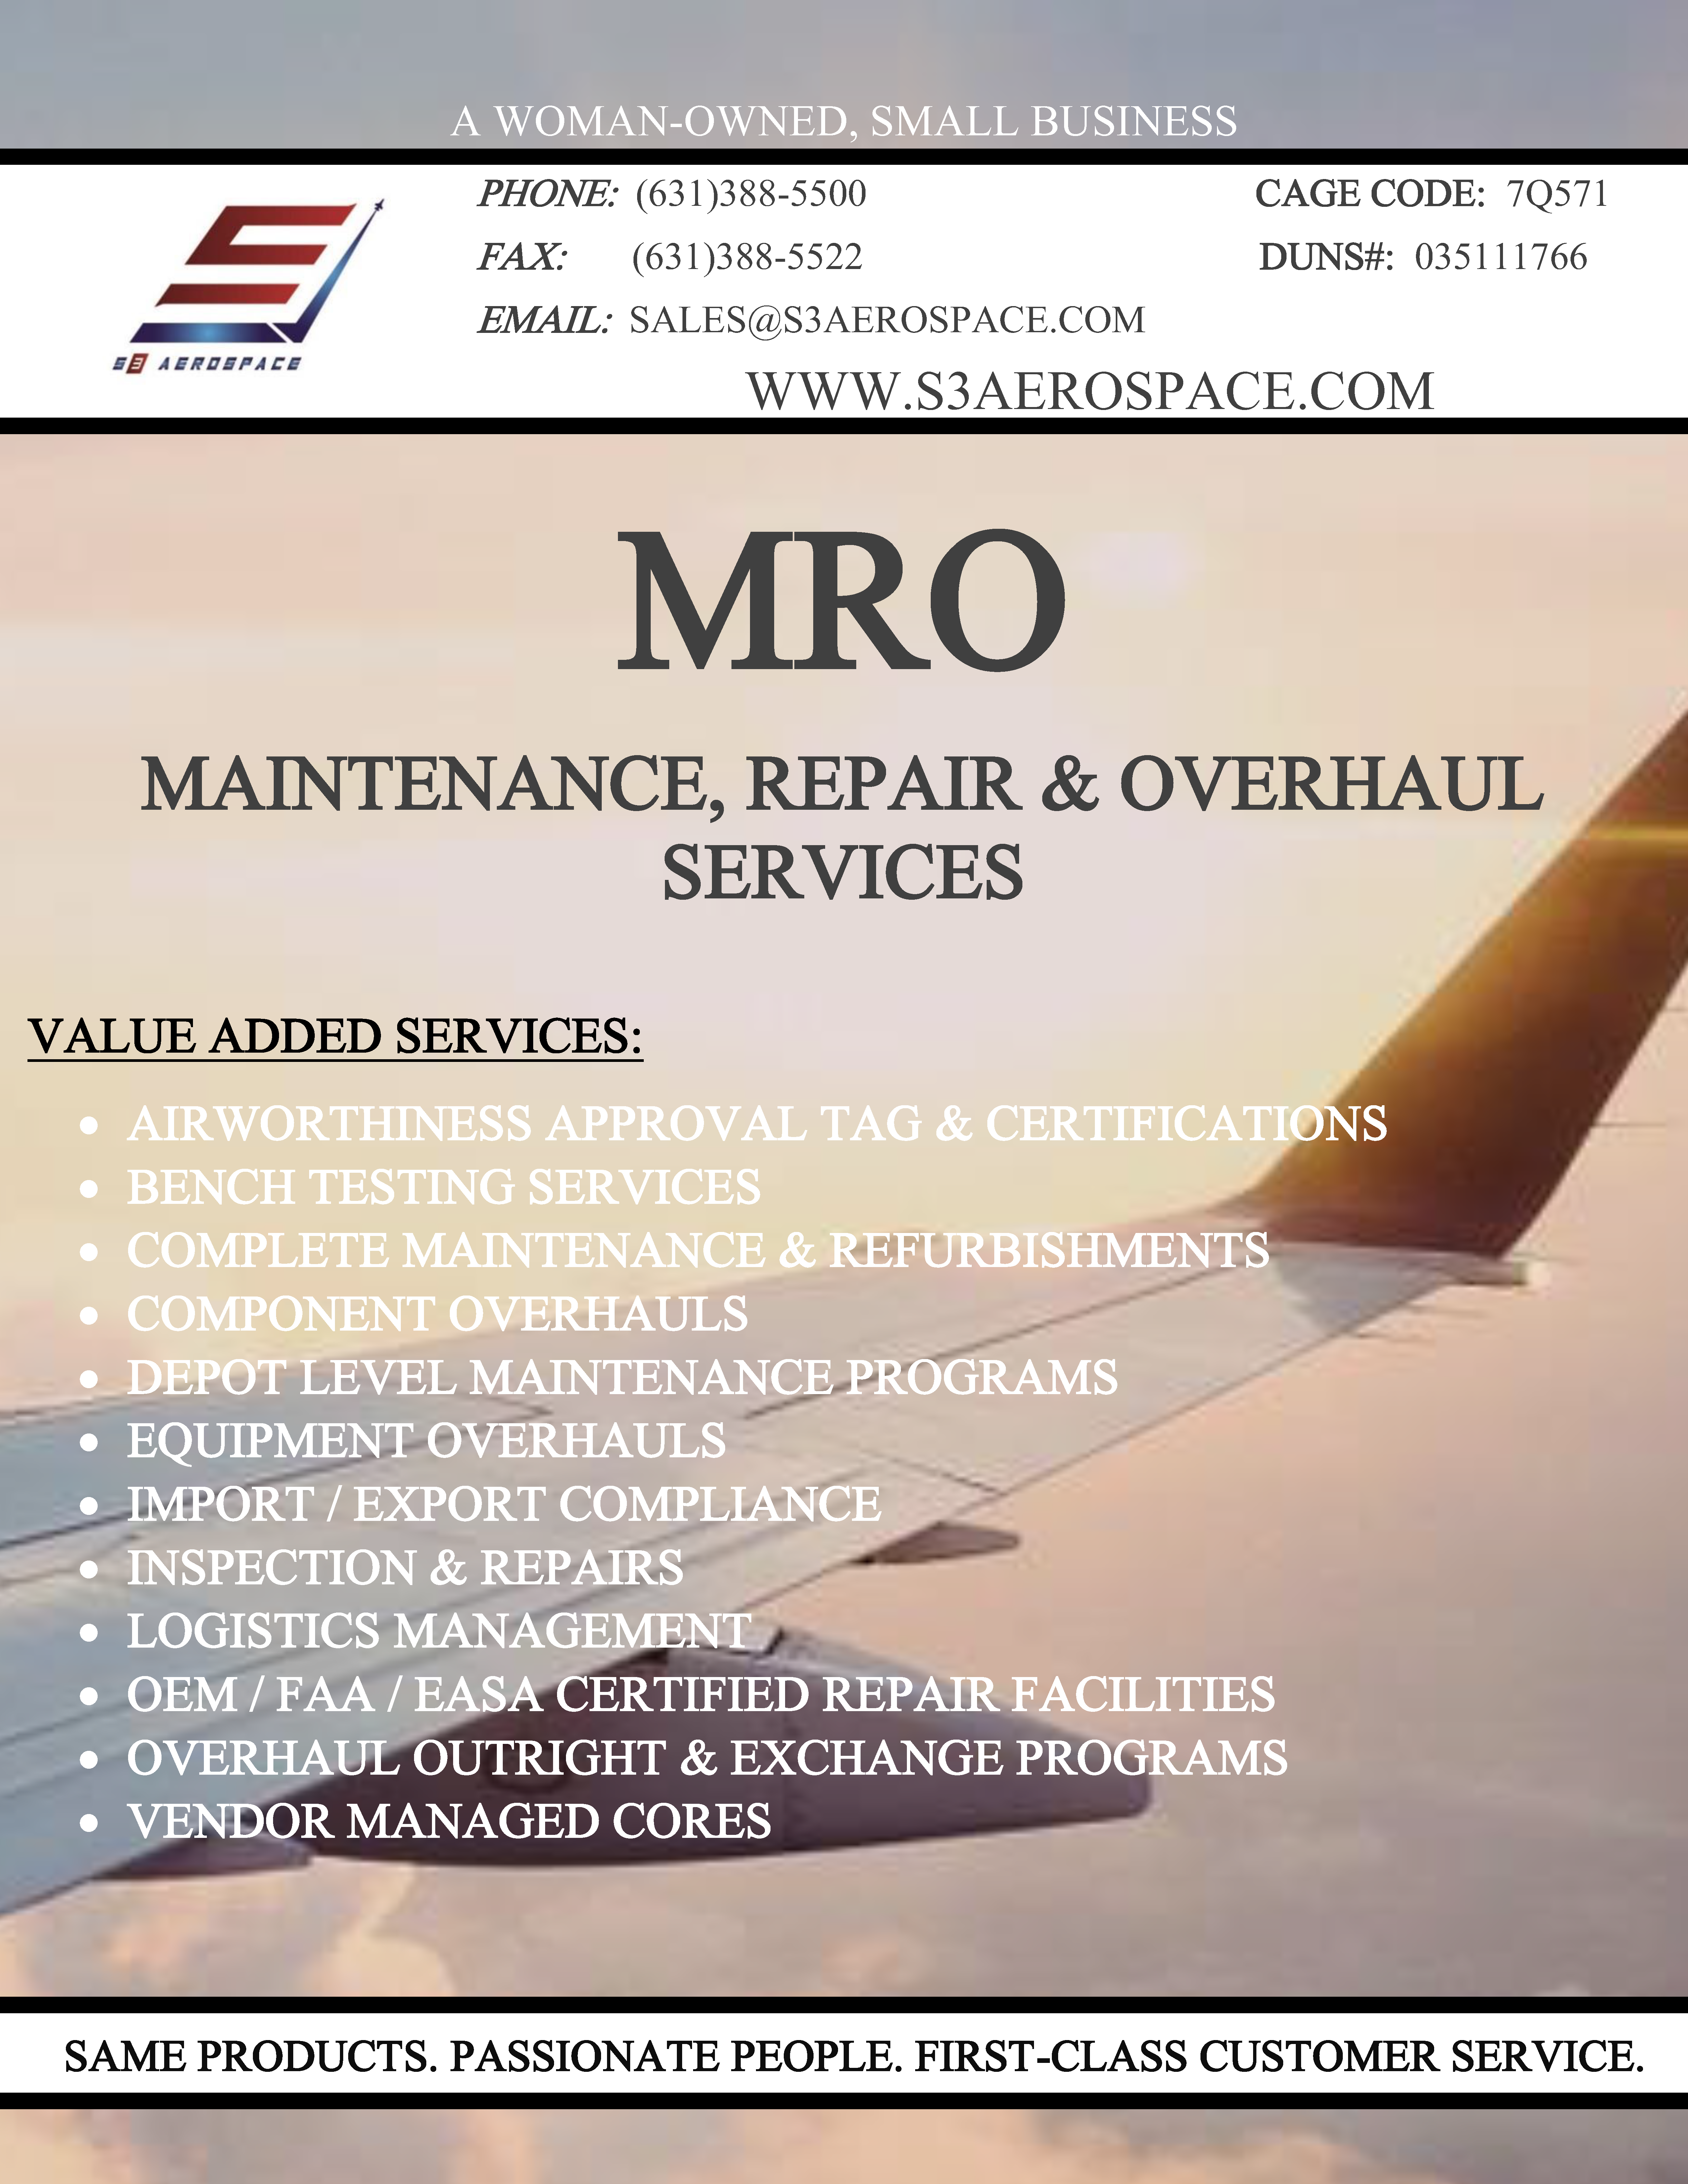 MRO Services 